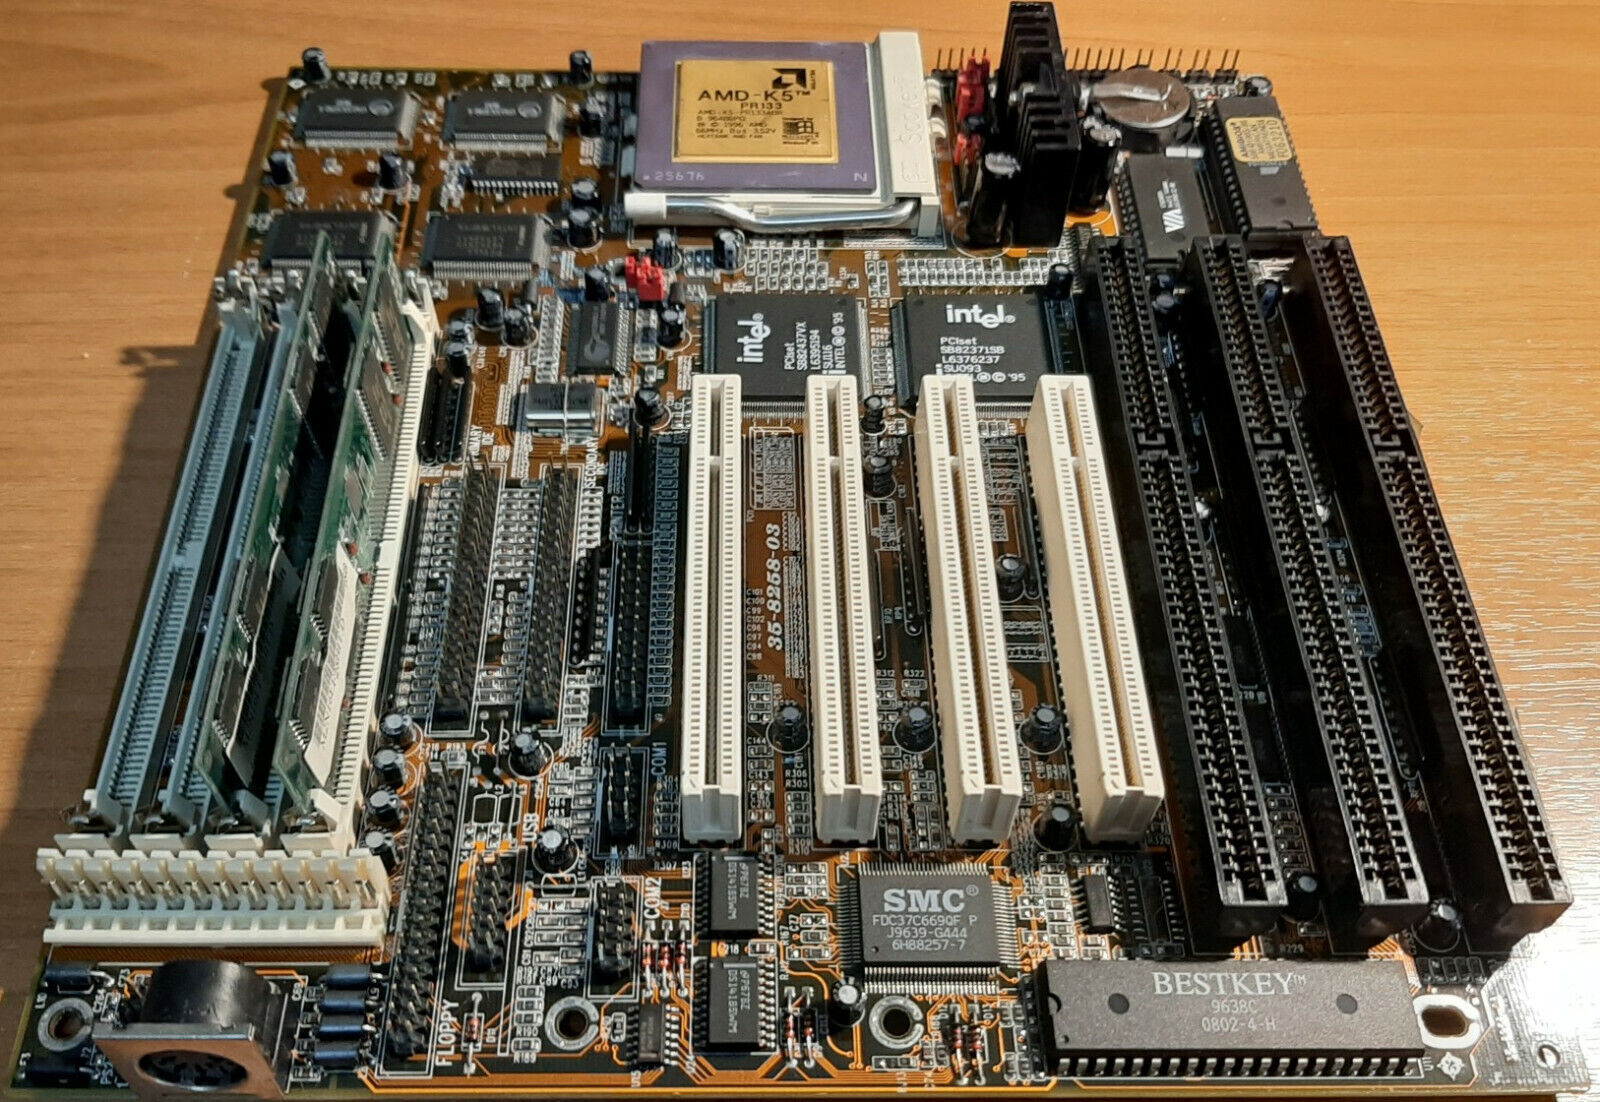 PC PARTNER 35-8258-03 SOCKET 7 + AMD - K5-PR133ABR + 32MB Ram